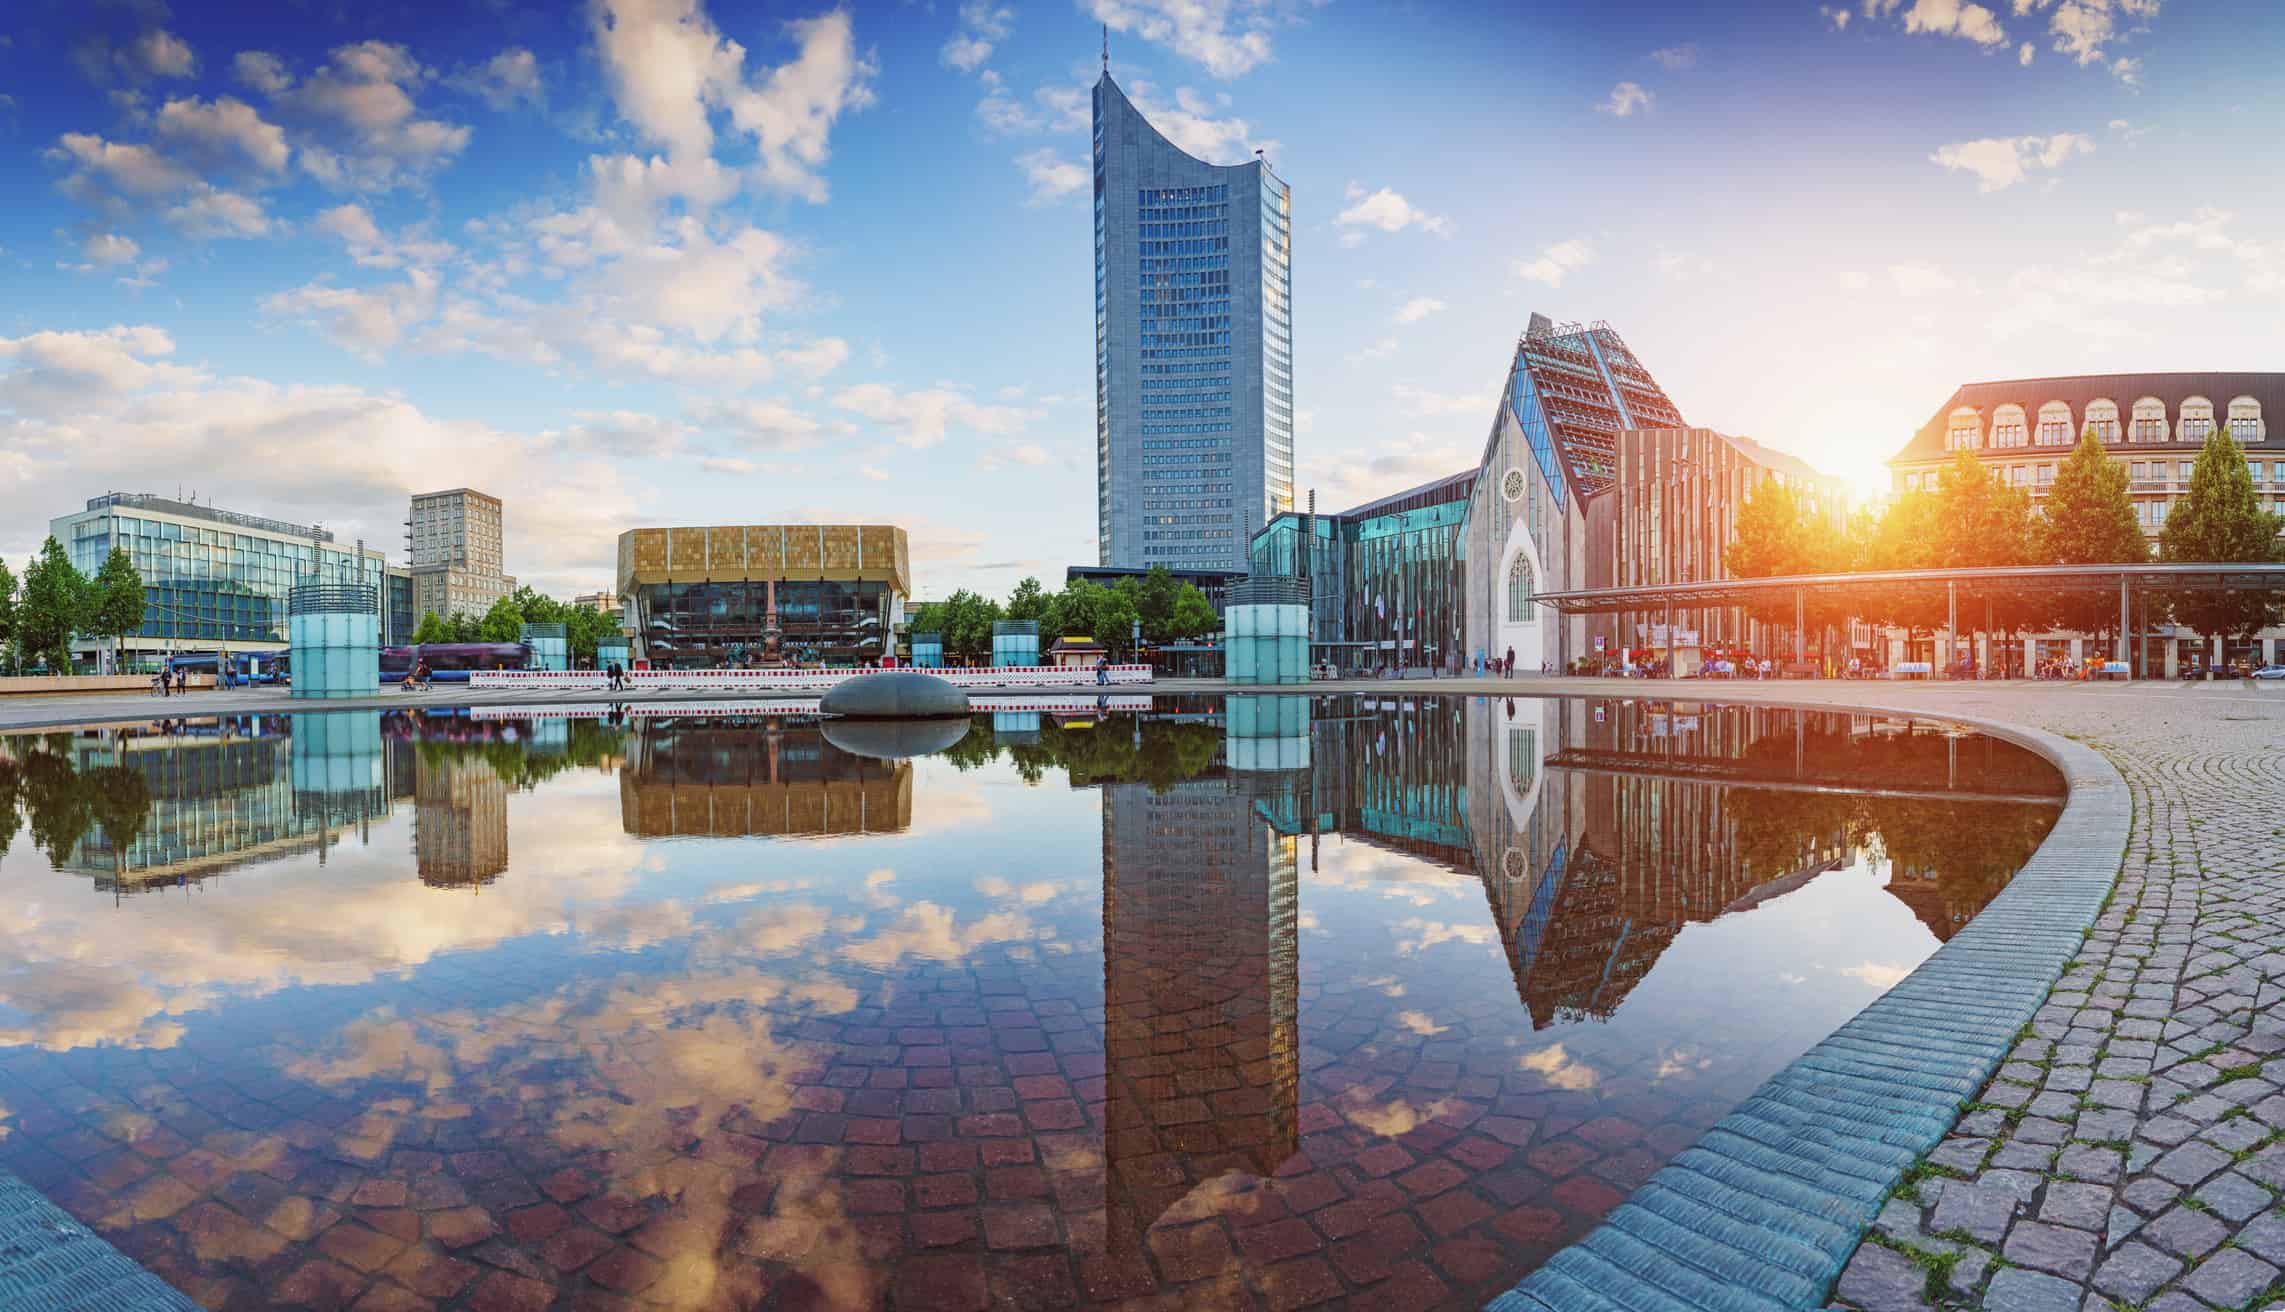 Entdecken Sie die 11 größten Städte Deutschlands